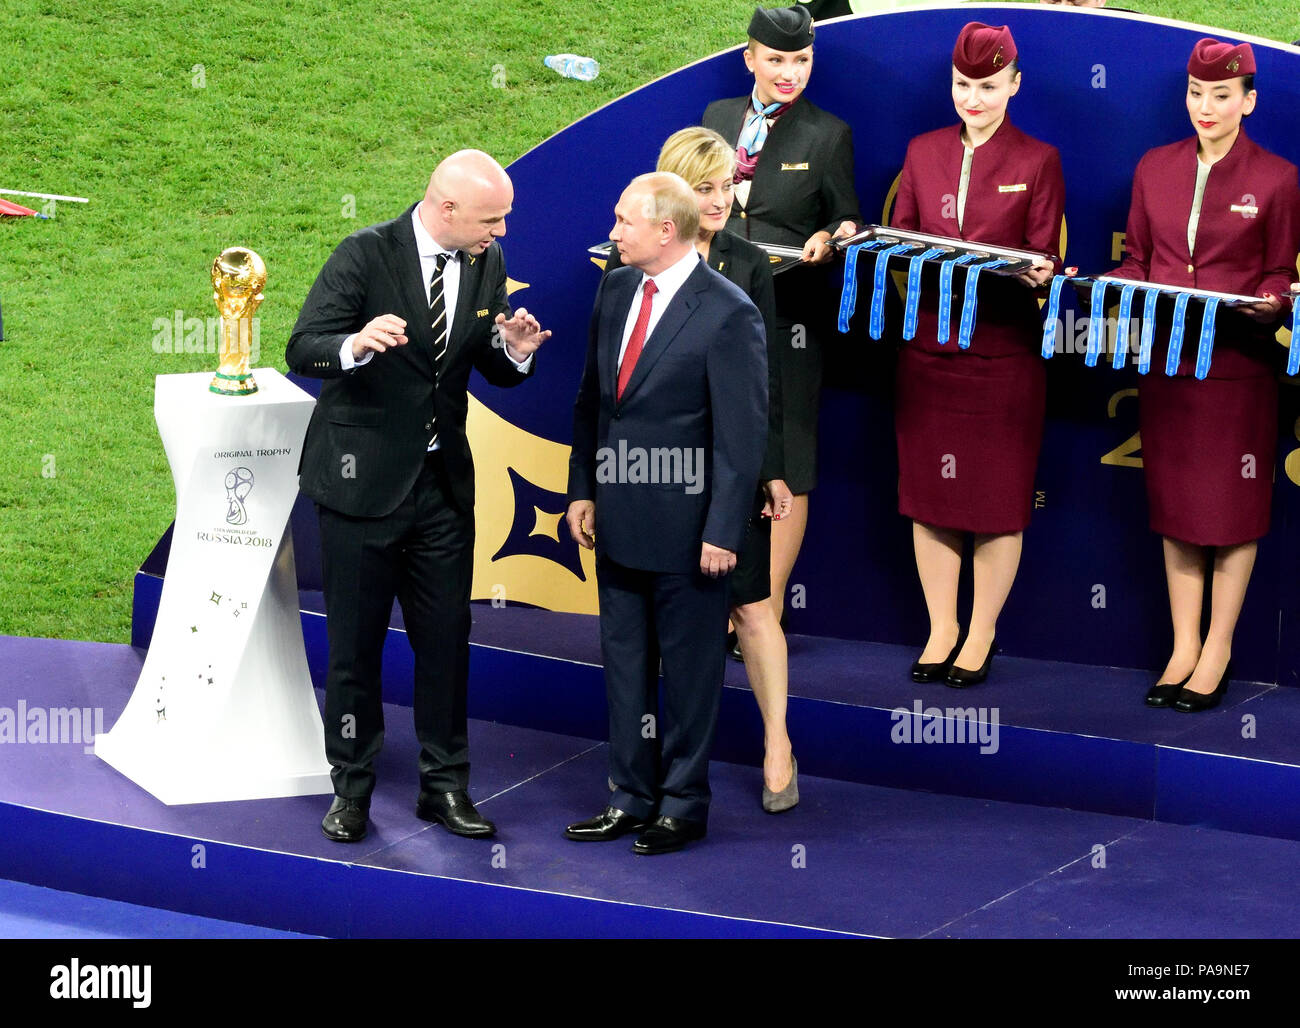 Moskau, Russland - 15. Juli 2018. Der russische Präsident Wladimir Putin an FIFA-Präsident Gianni Infantino vor WM-Trophäe Präsentation afte Stockfoto